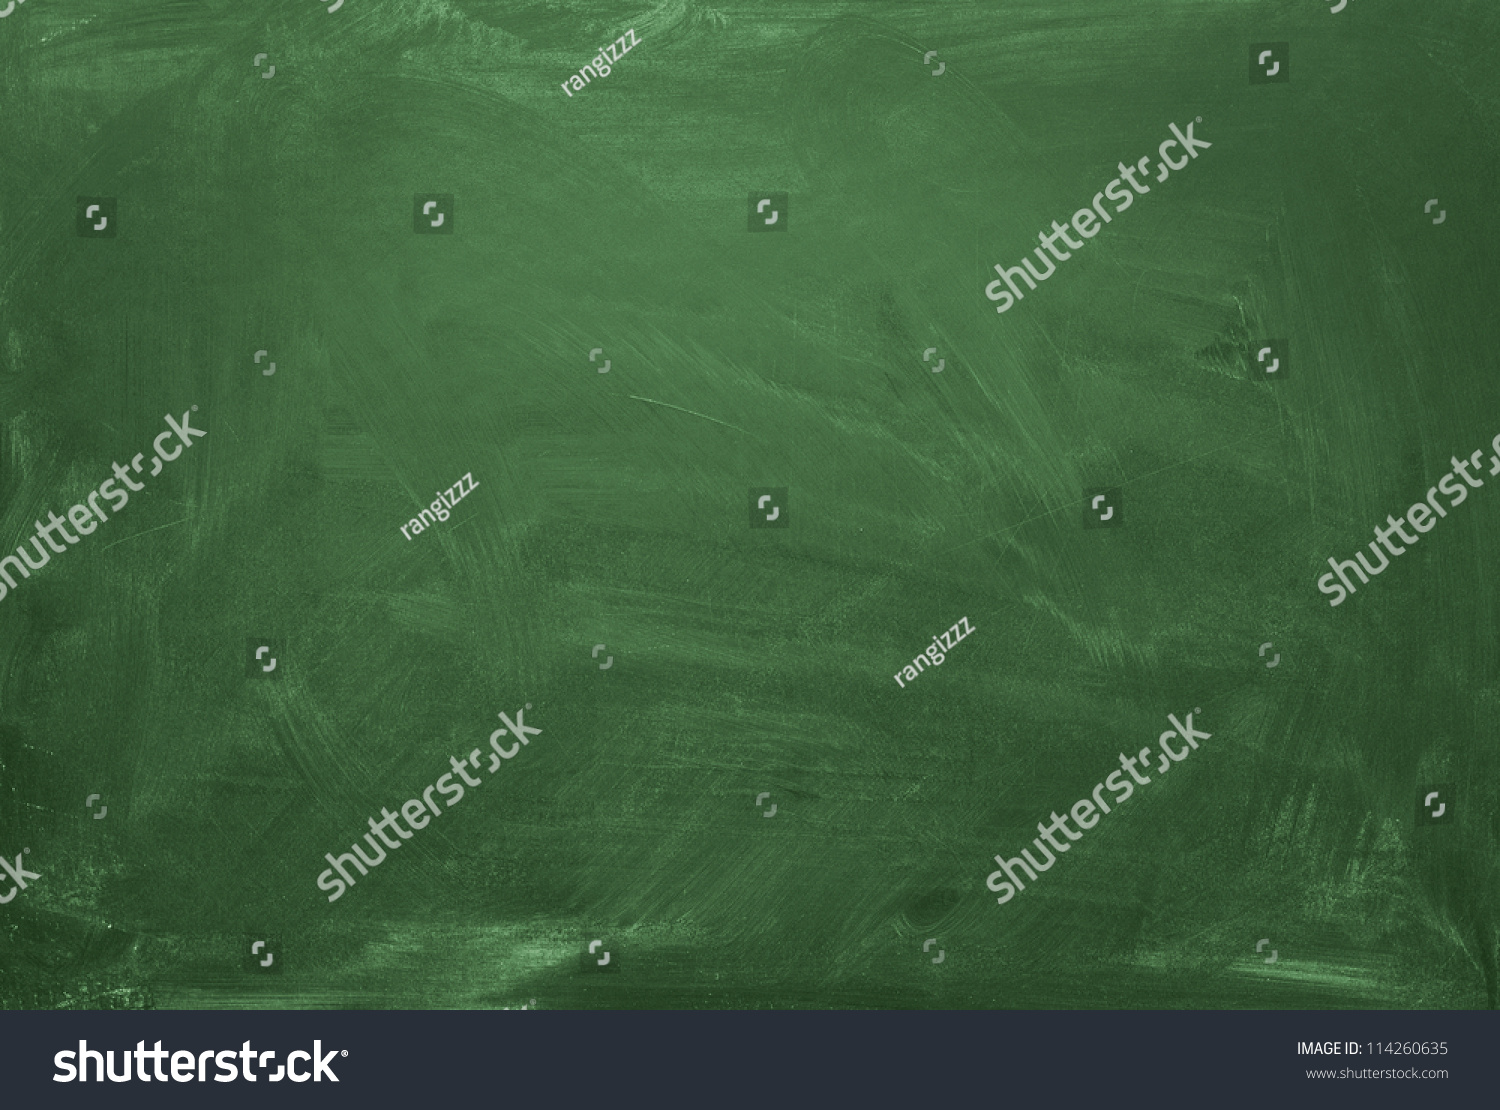 Blank green chalkboard, blackboard texture with copy space #114260635